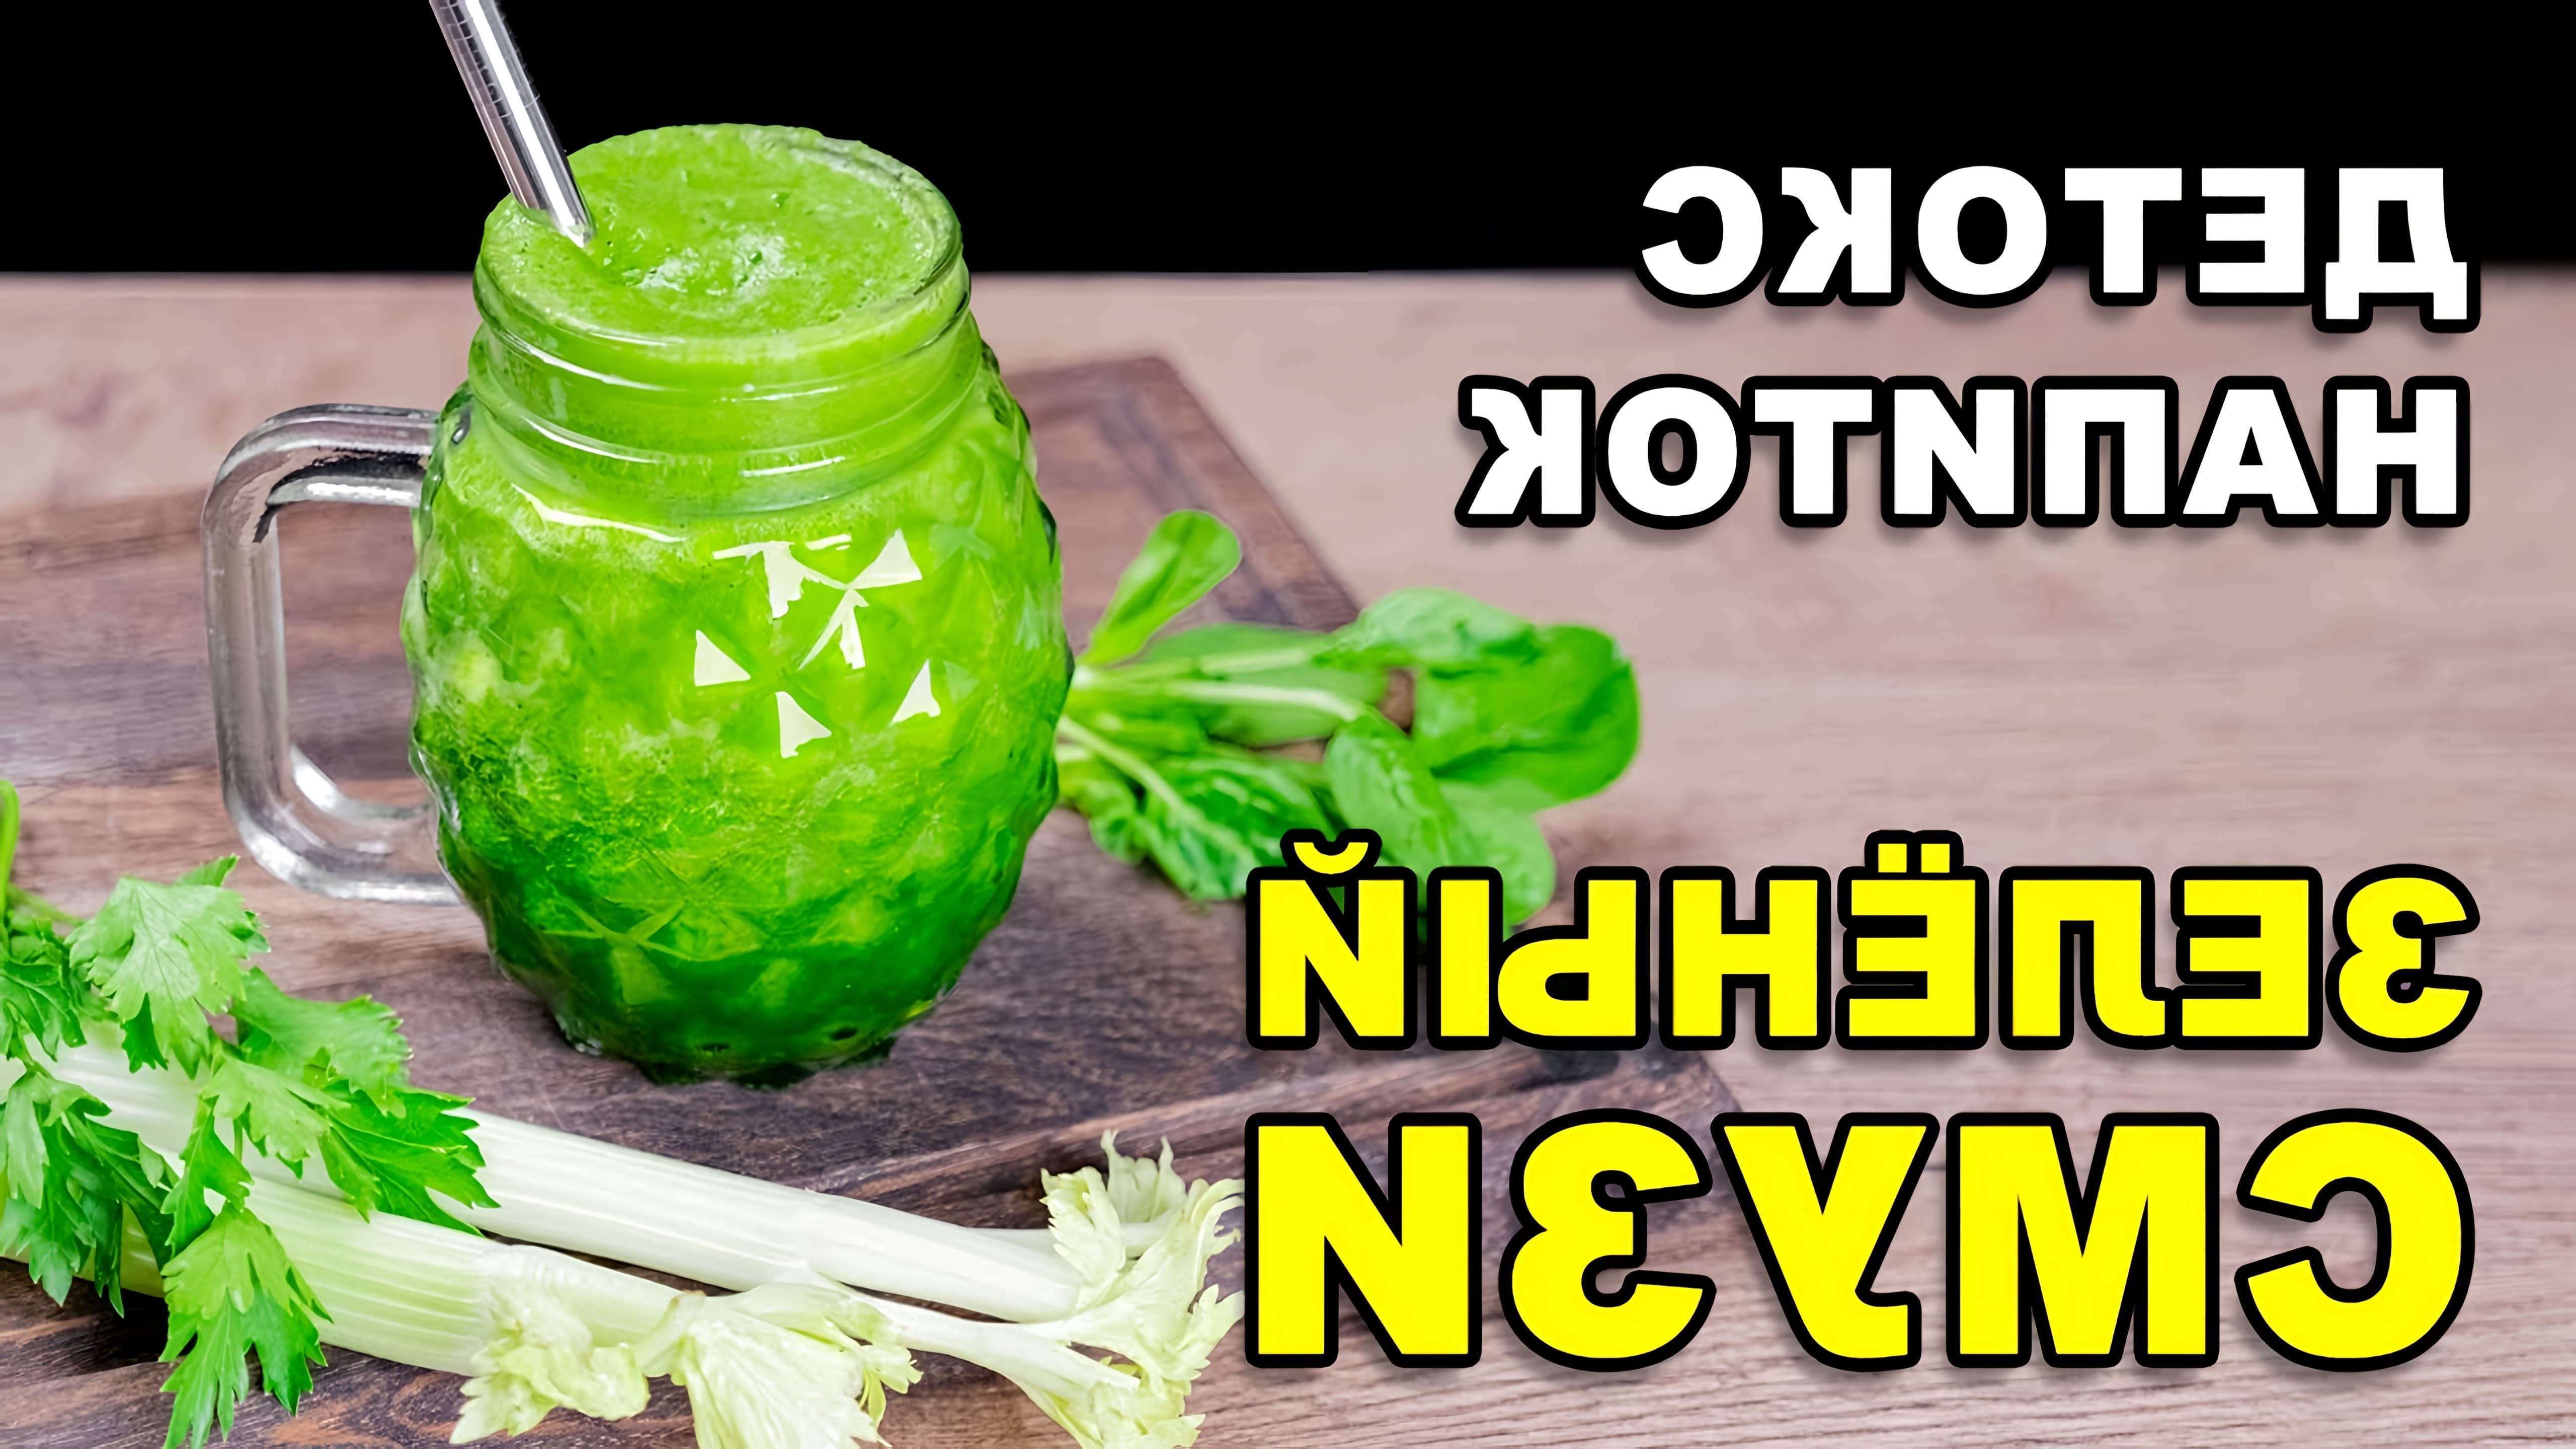 В этом видео демонстрируется рецепт приготовления зеленого детокс смузи, который является полезным напитком для очищения организма и похудения